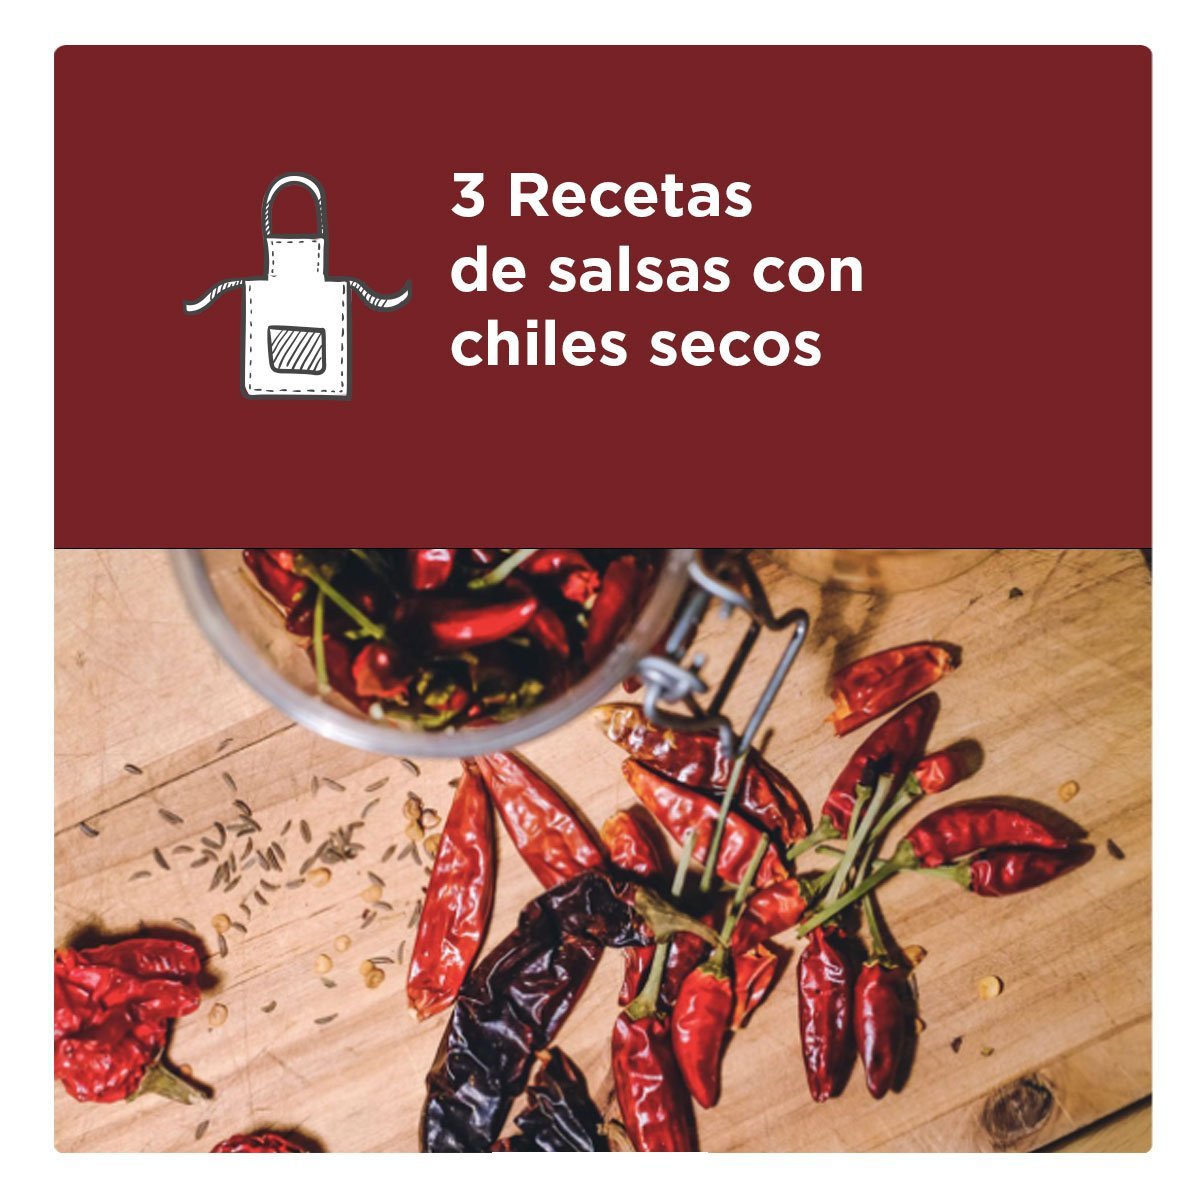 3 recetas de salsas con chiles secos